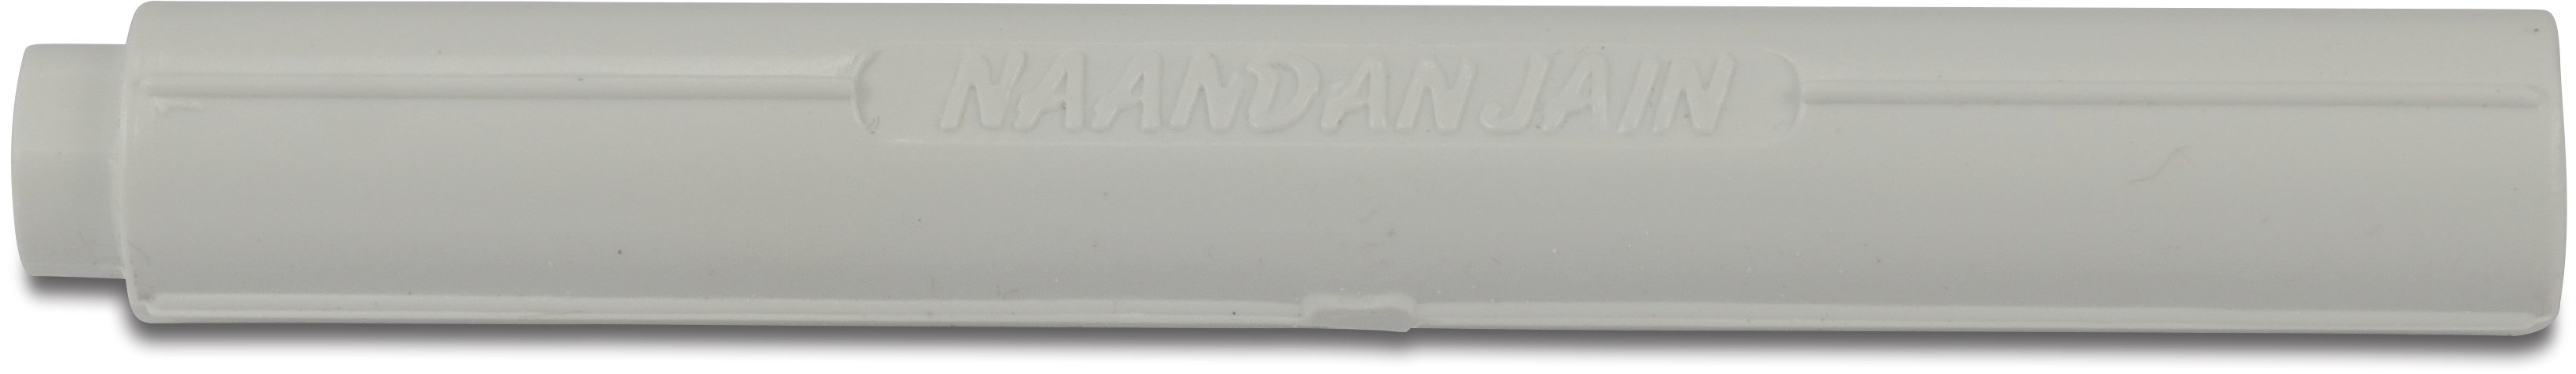 NaanDanJain Stabilisator voor micro pijp 7mm kunststof 13cm